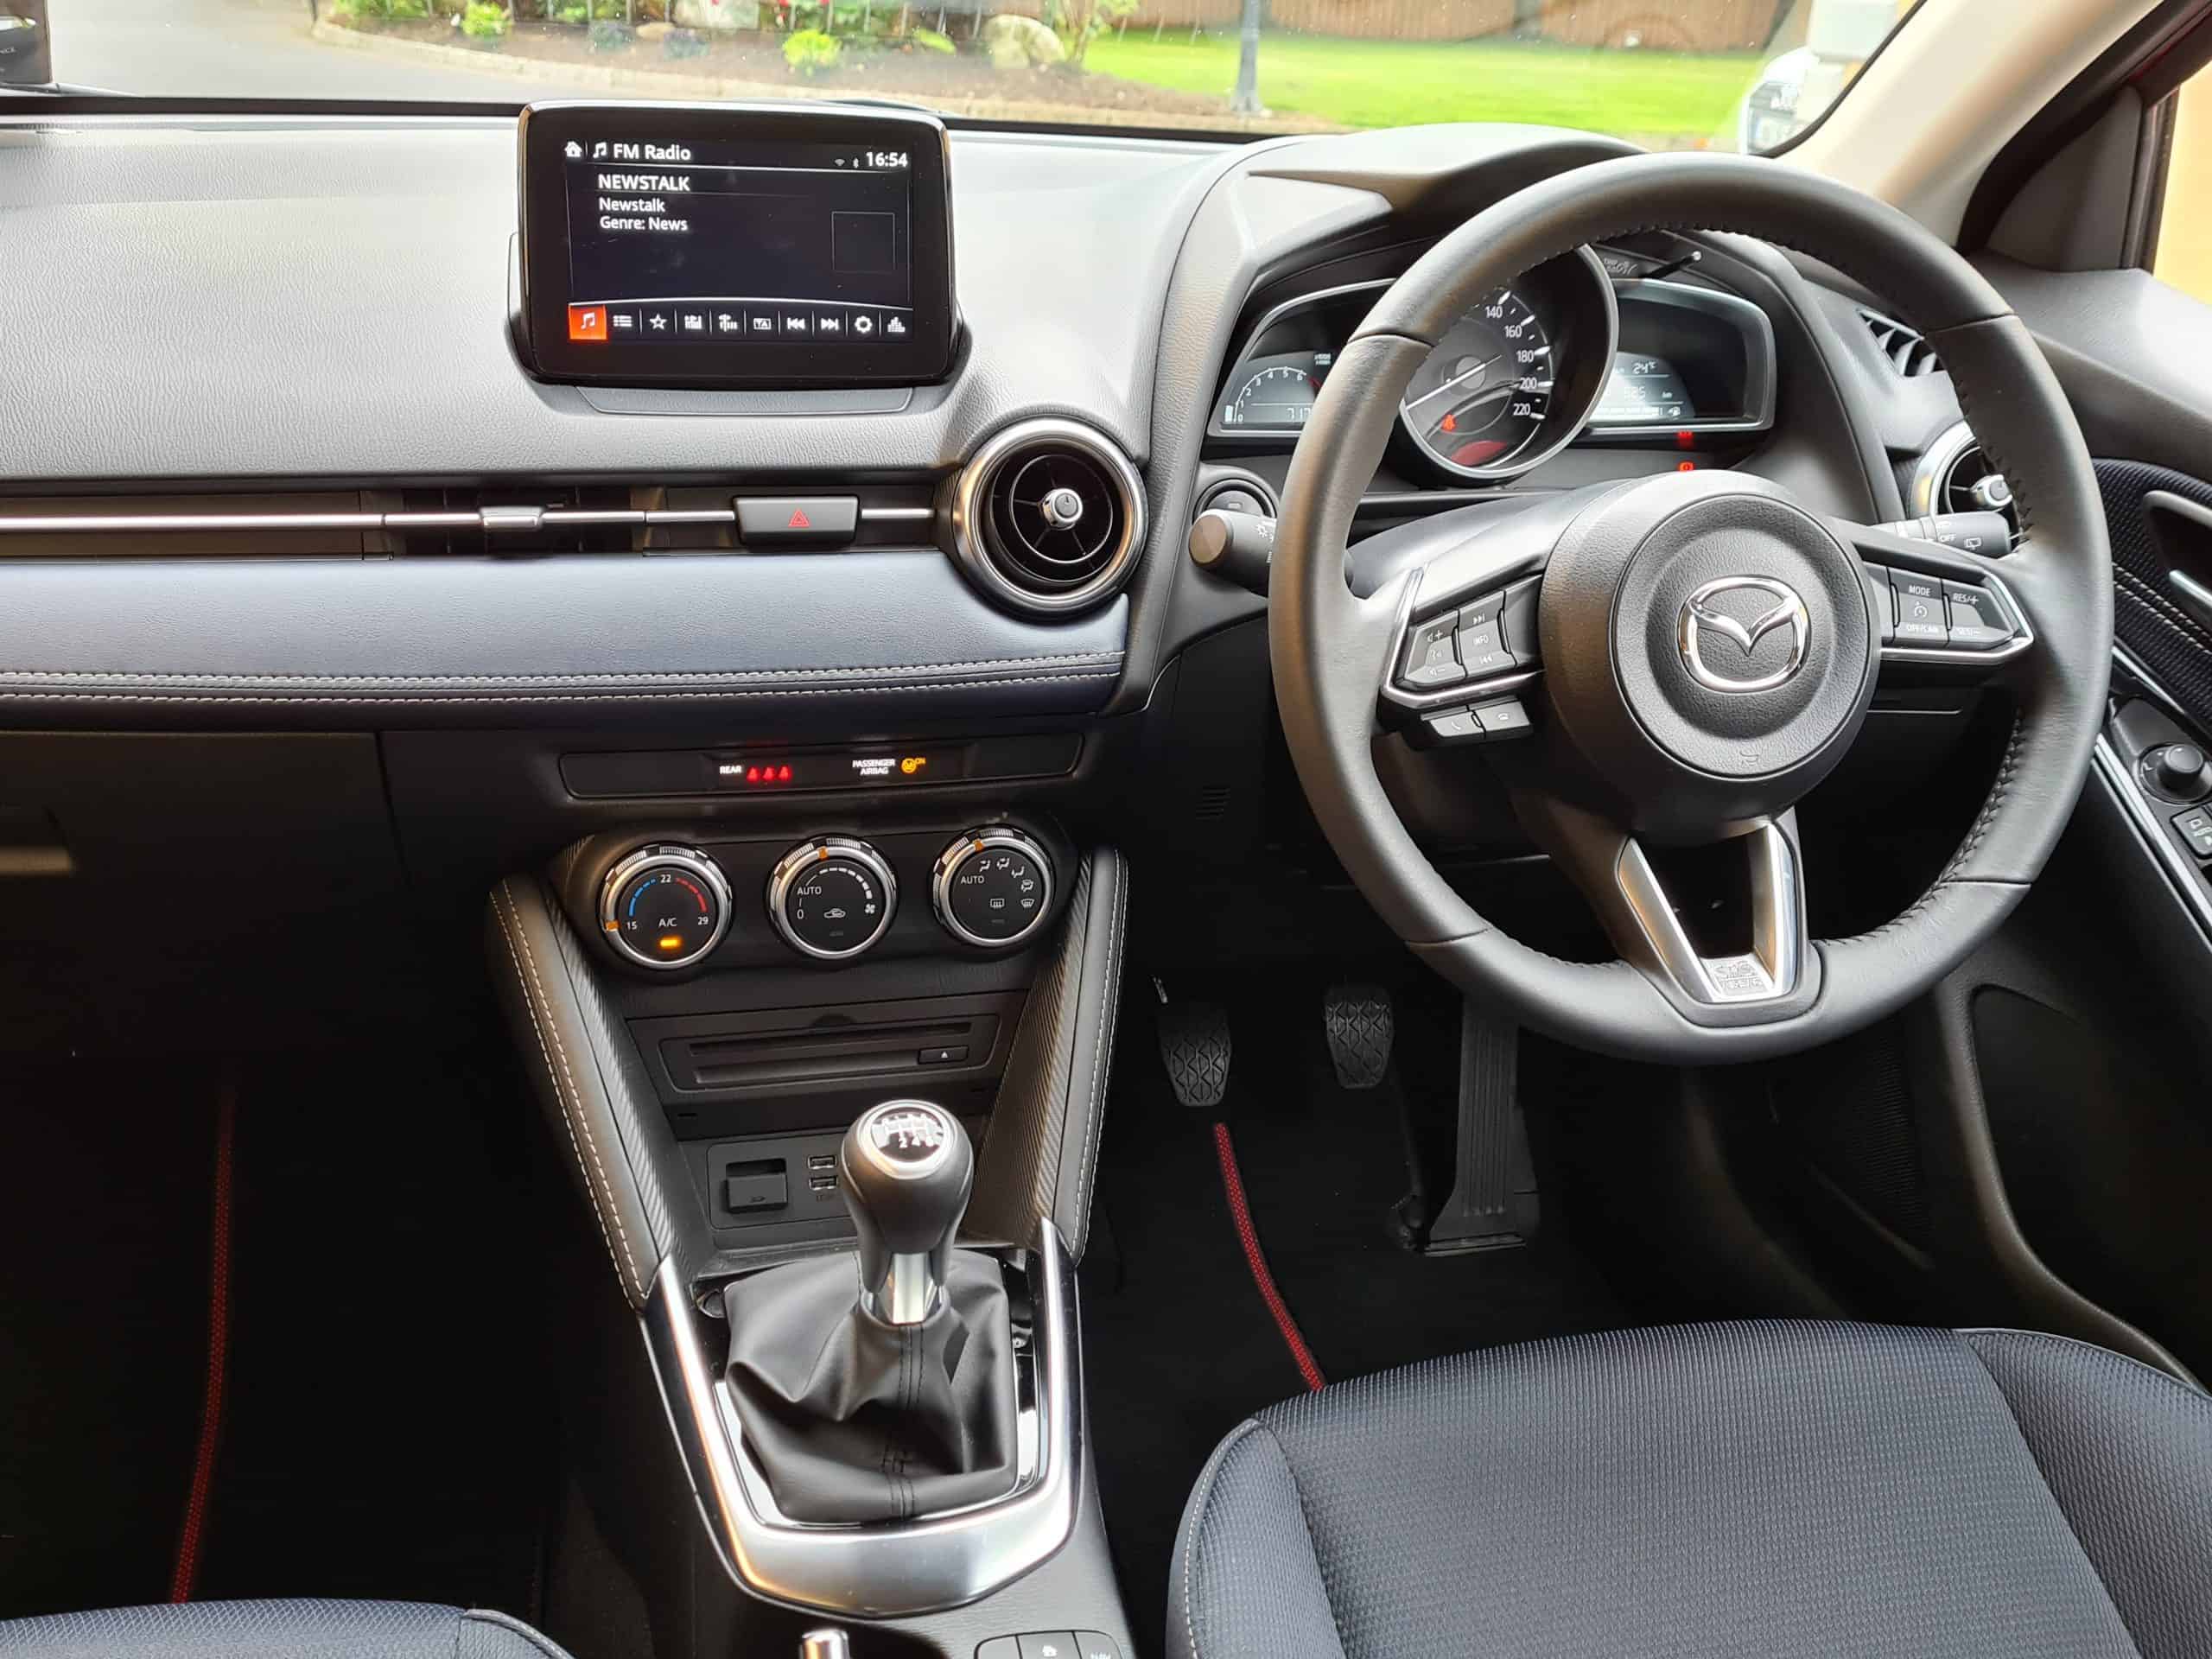 Facelift Mazda2: Der Mildhybrid im Fahrbericht - AUTO BILD